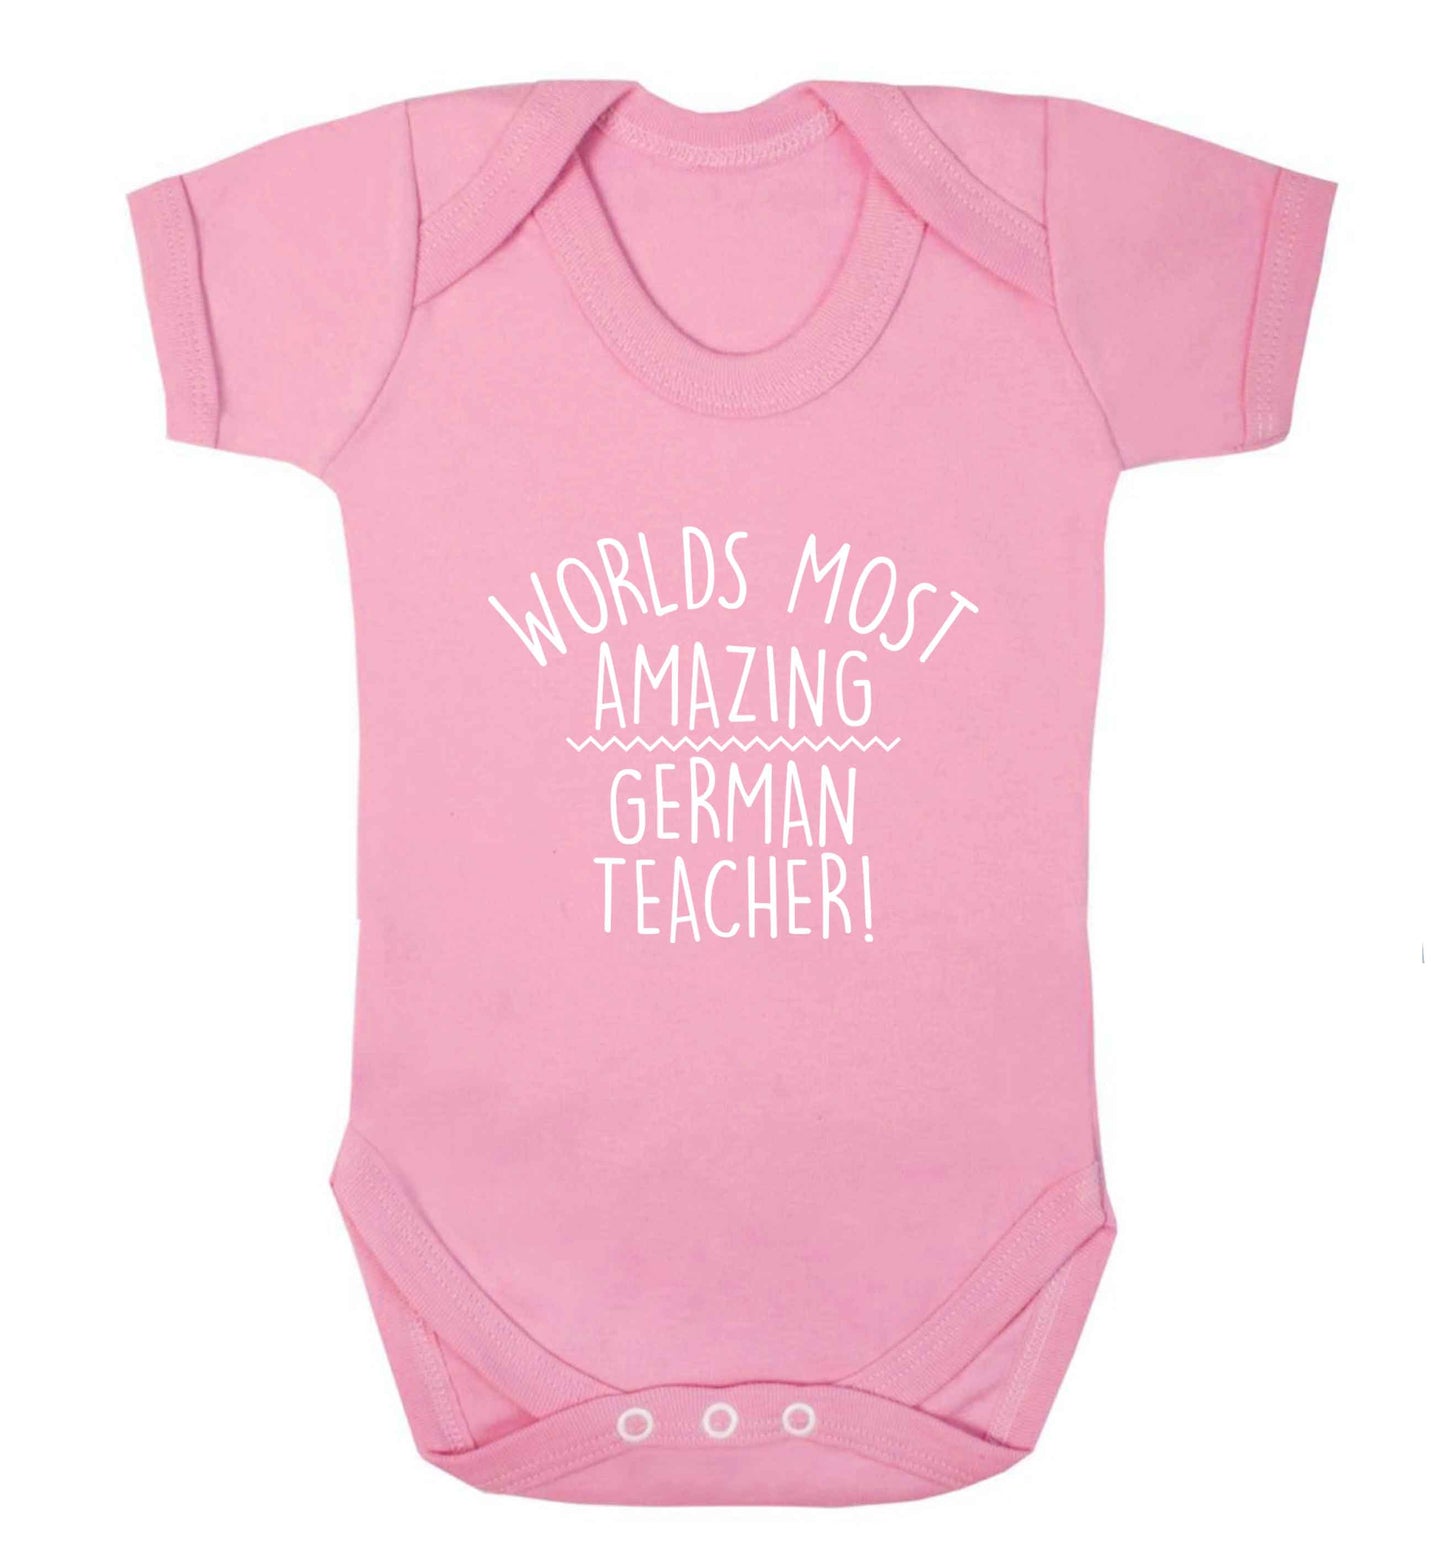 Worlds most amazing German teacher baby vest pale pink 18-24 months